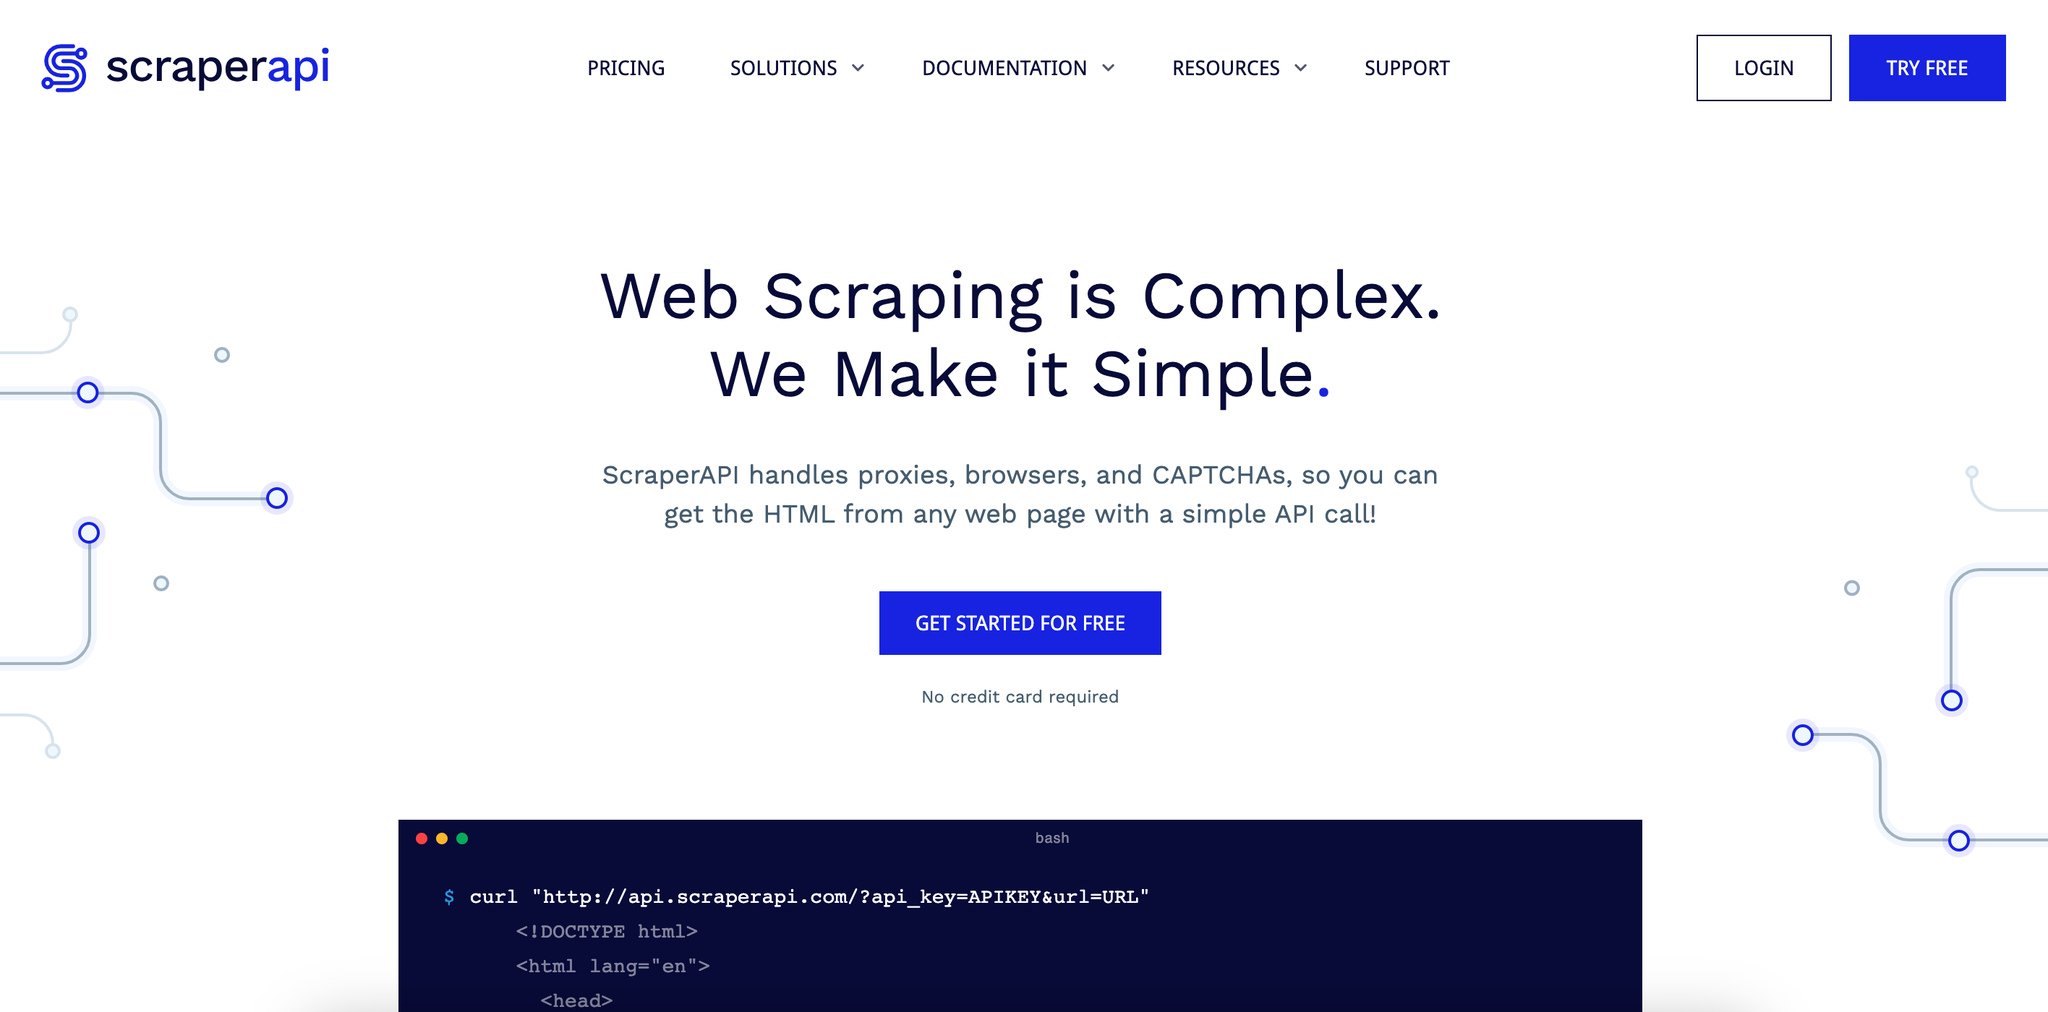 The homepage of Scraper API, web scraping tool